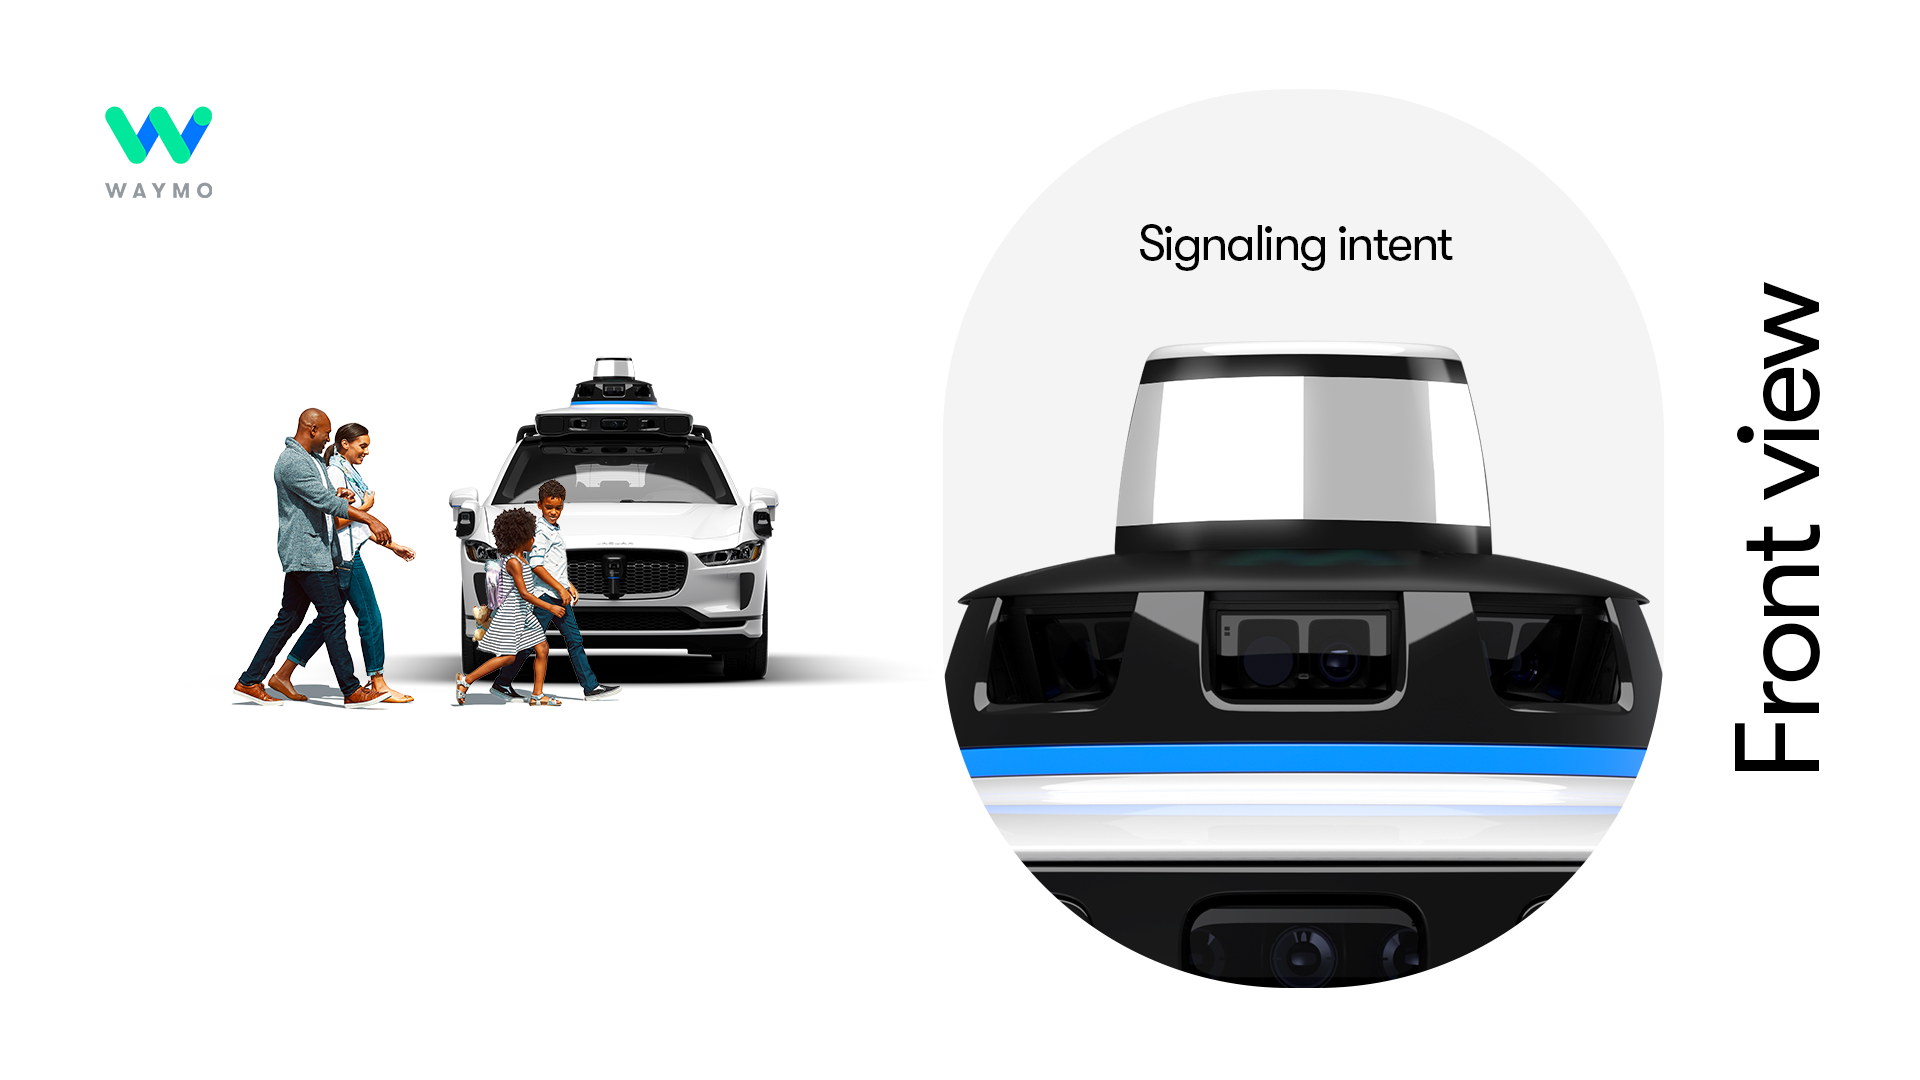 Waymo heeft een visueel communicatiesysteem ontwikkeld voor onbemande auto's met mensen-3